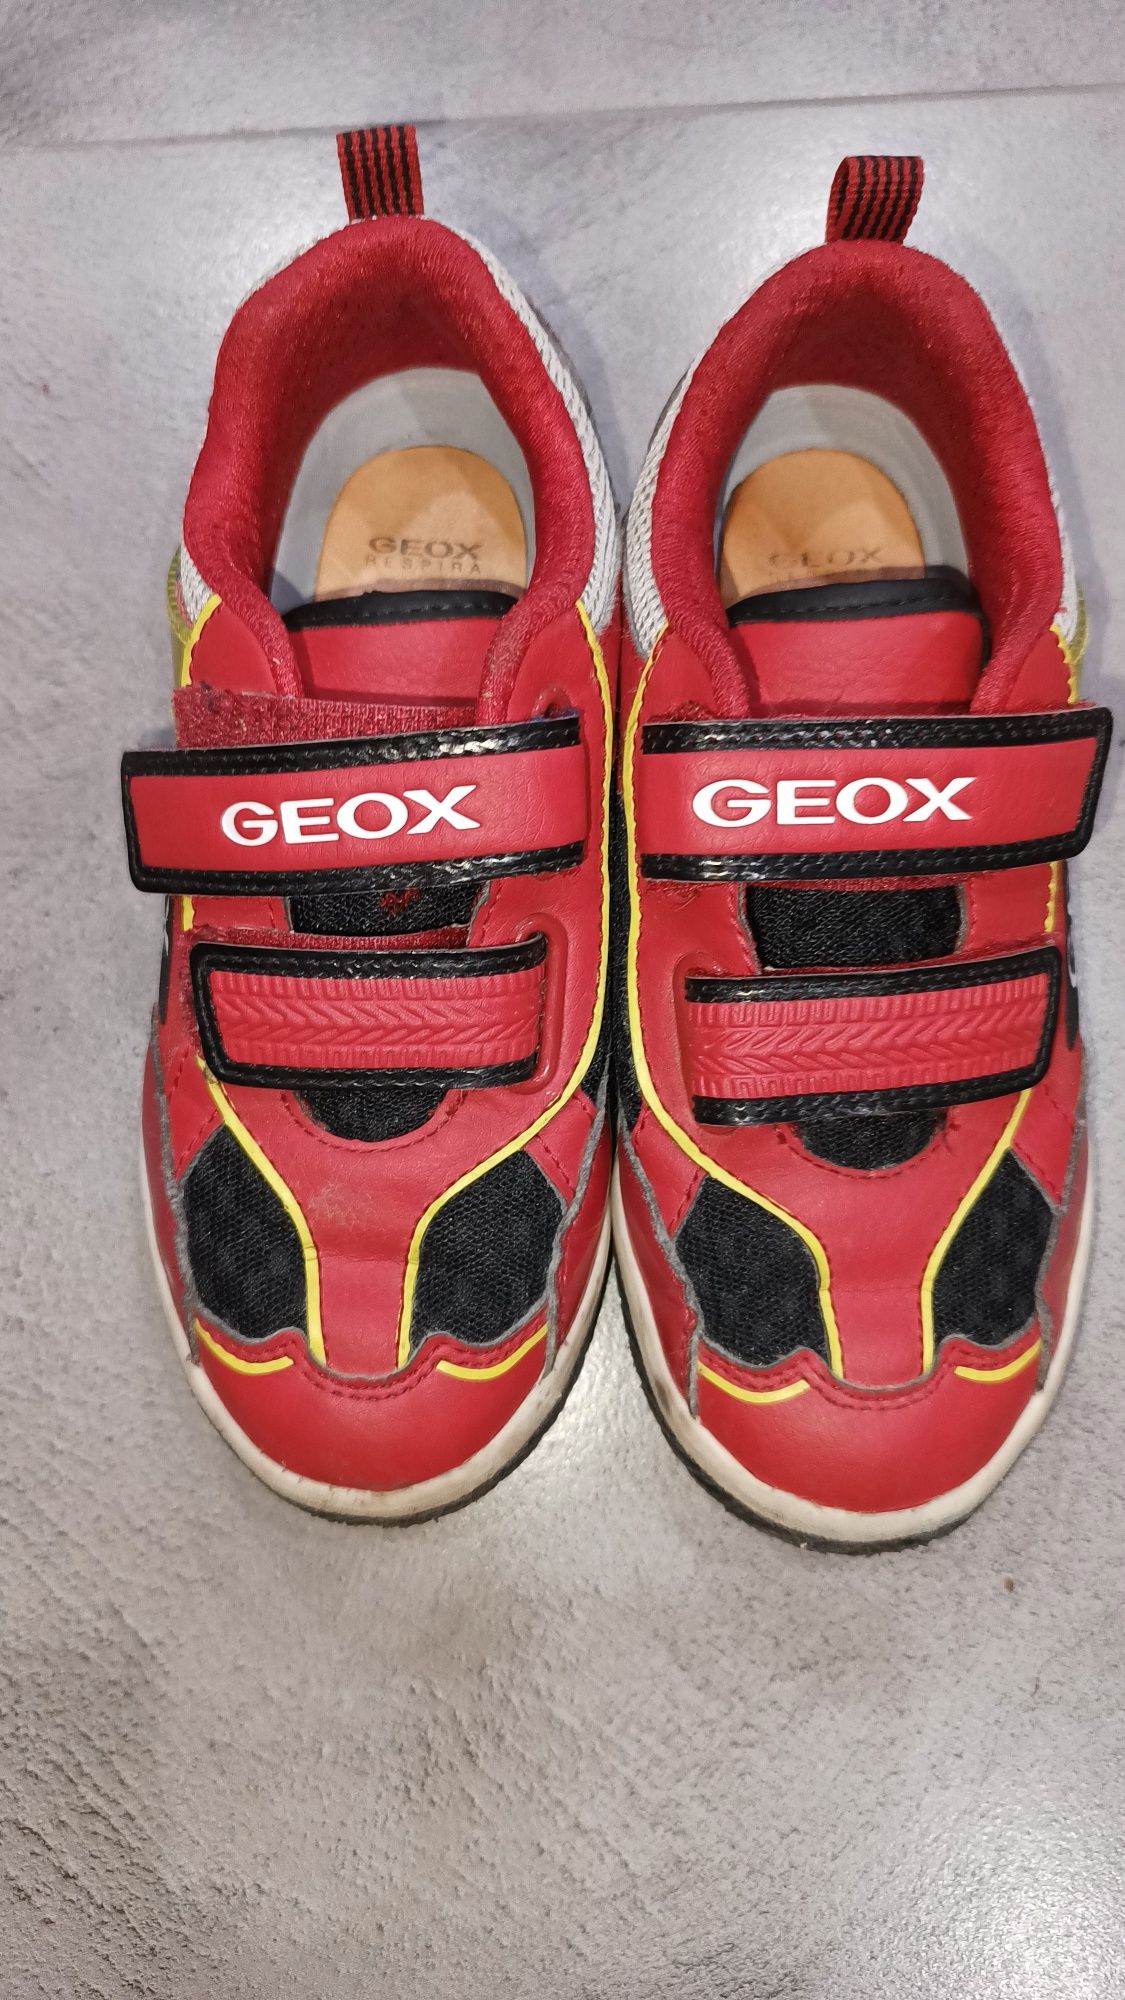 Buty chłopięce Geox Świecace czerwone wyścigowe roz. 31